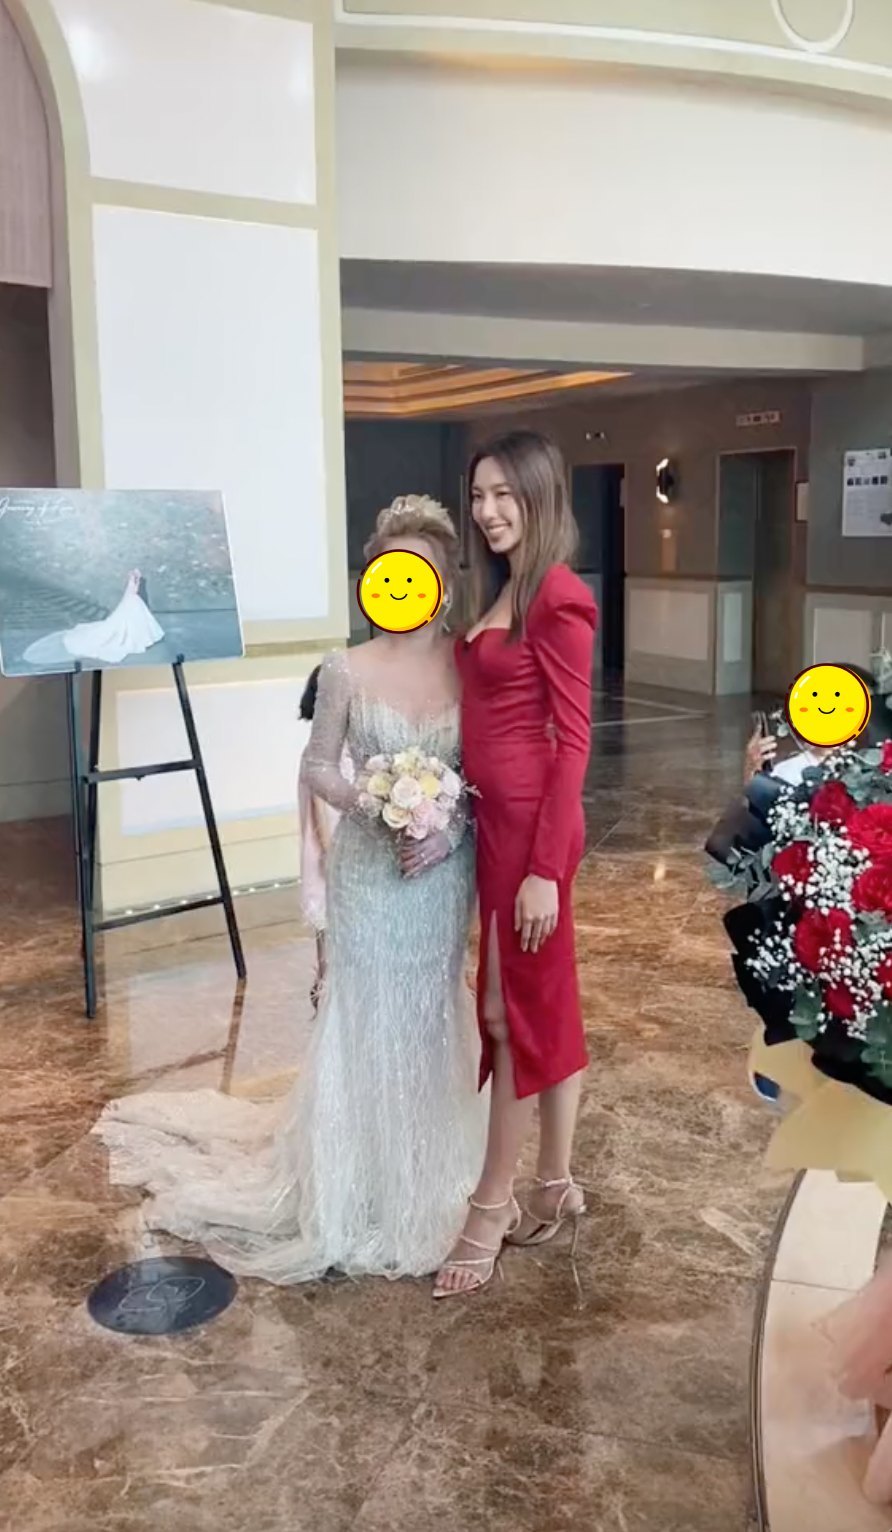  
Thùy Tiên ghé qua chụp ảnh cùng cô dâu trong một đám cưới, một em nhỏ cũng phải cầm điện thoại ghi hình hoa hậu. (Ảnh: TikTok vbiztv) - Tin sao Viet - Tin tuc sao Viet - Scandal sao Viet - Tin tuc cua Sao - Tin cua Sao